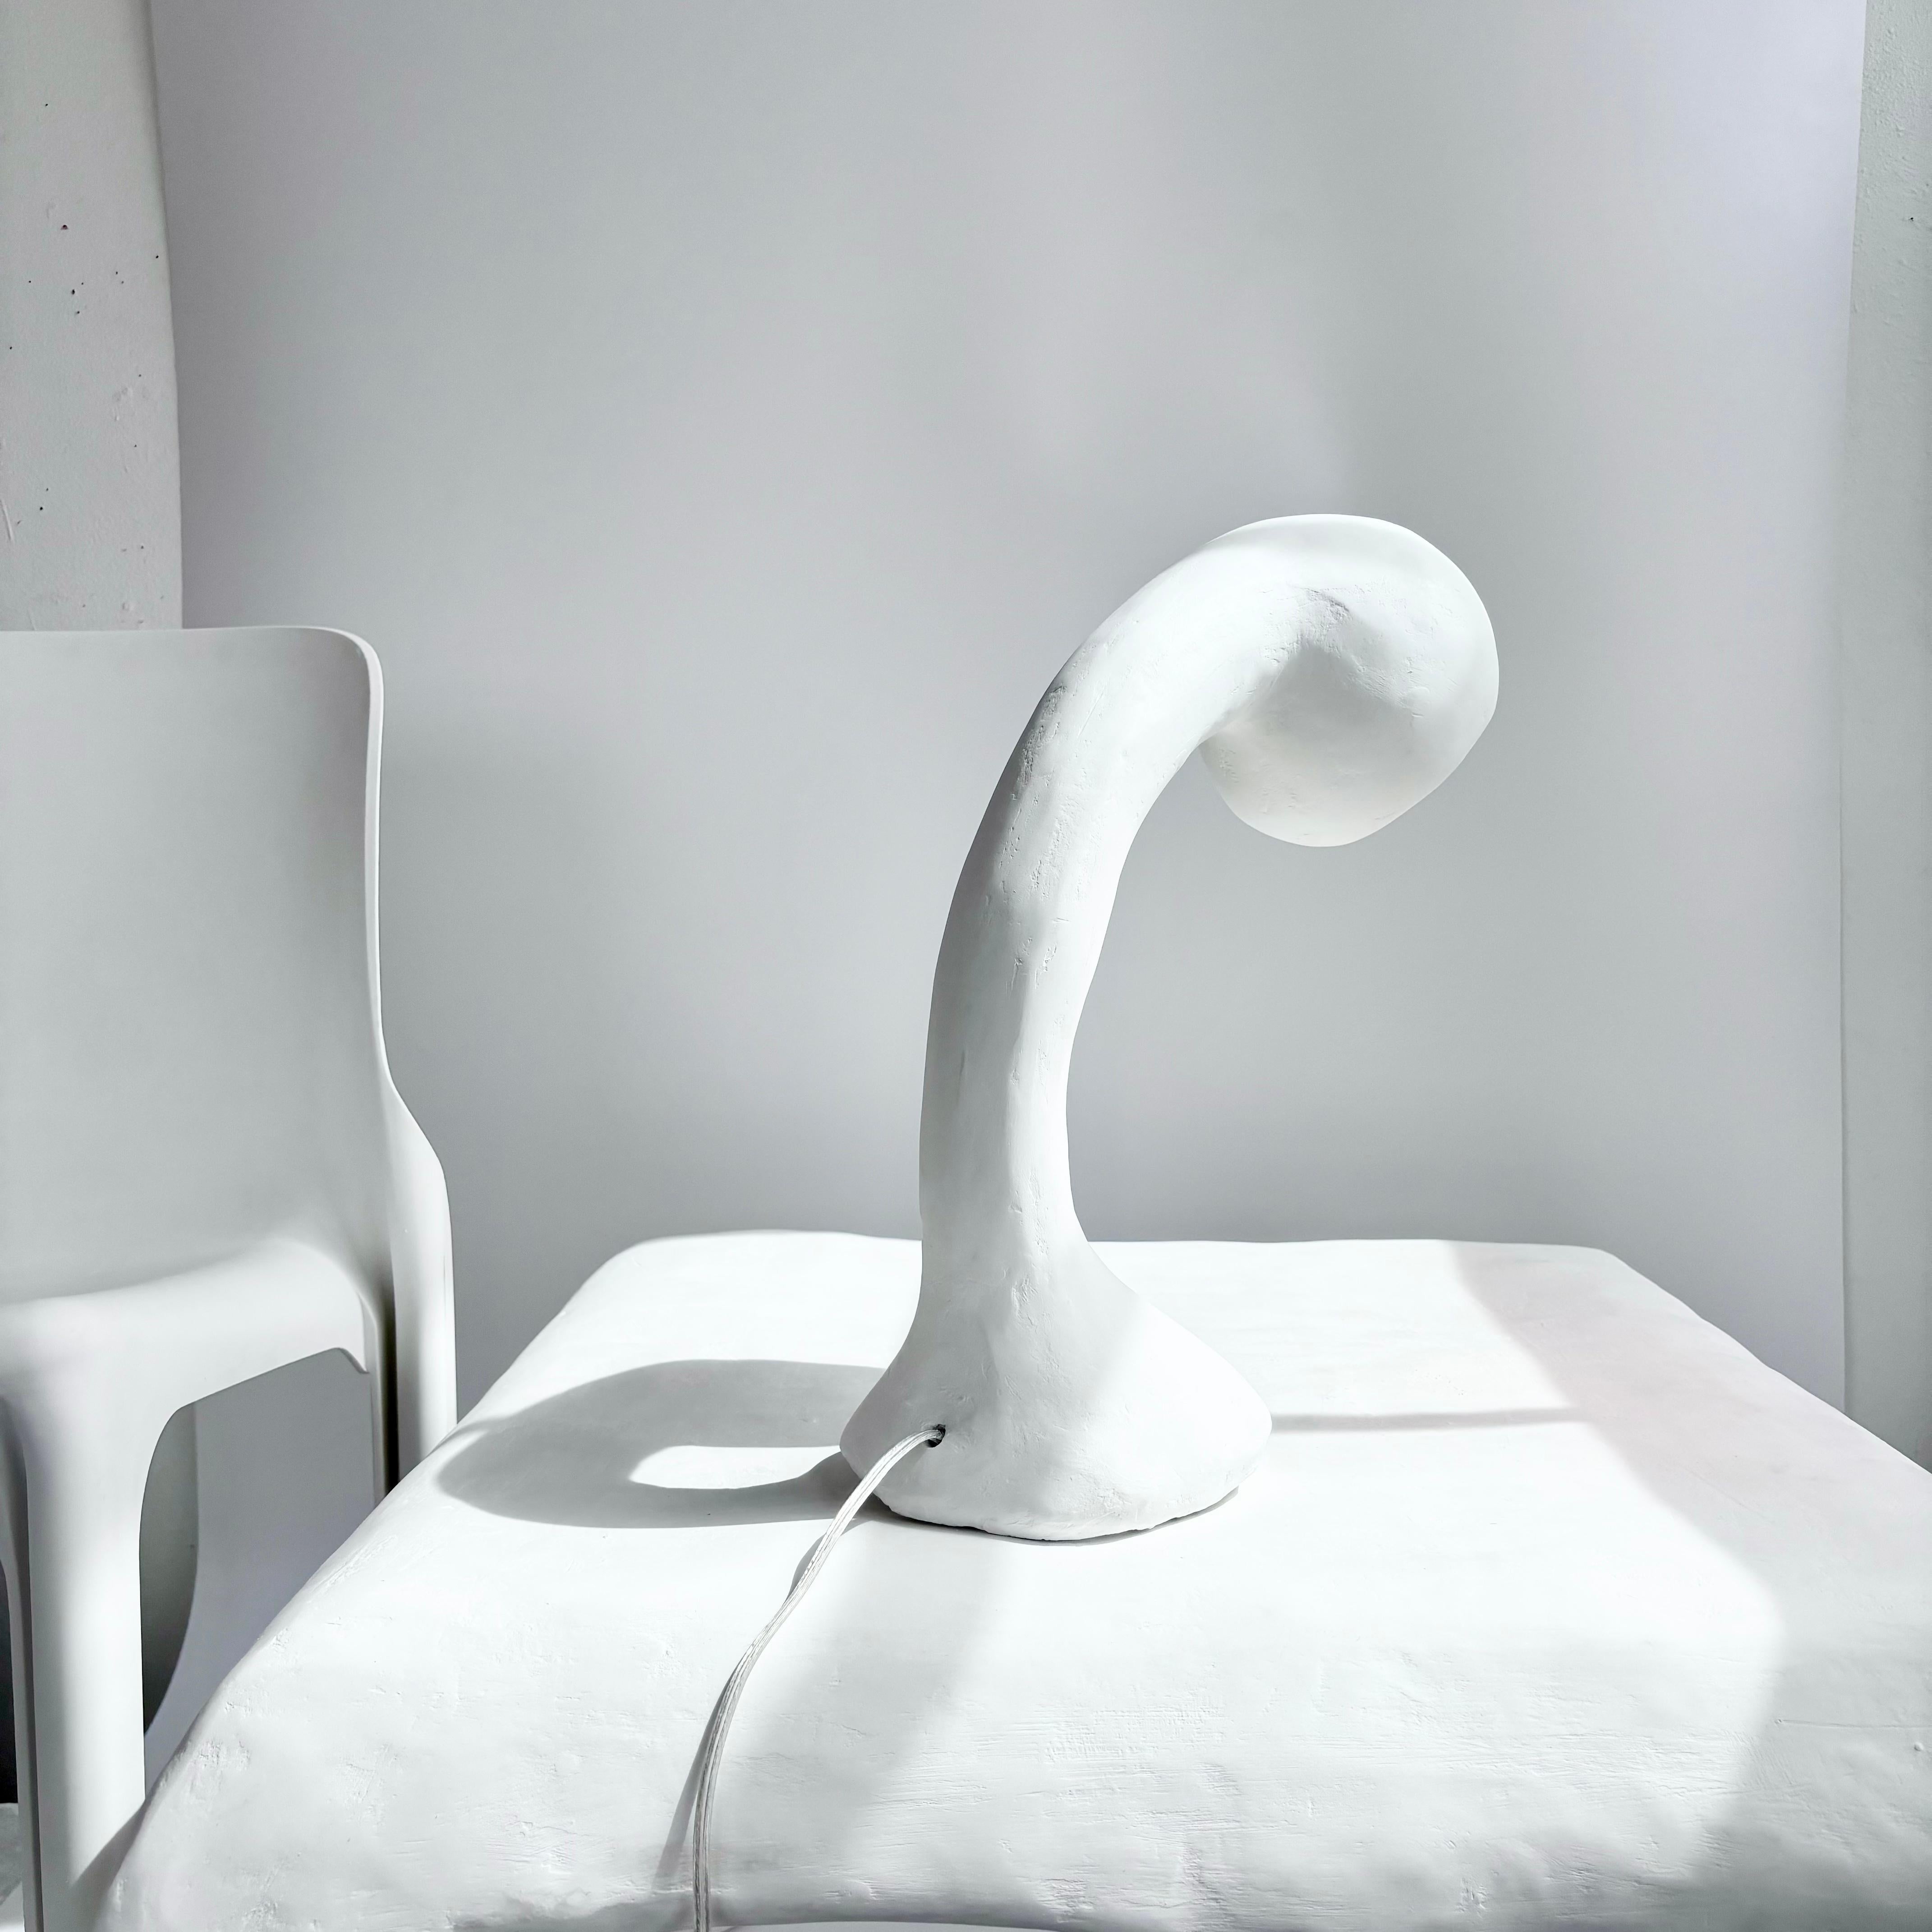 Américain Lampe de bureau Biomorphic Line de Studio Chora, en plâtre blanc citron, en stock en vente